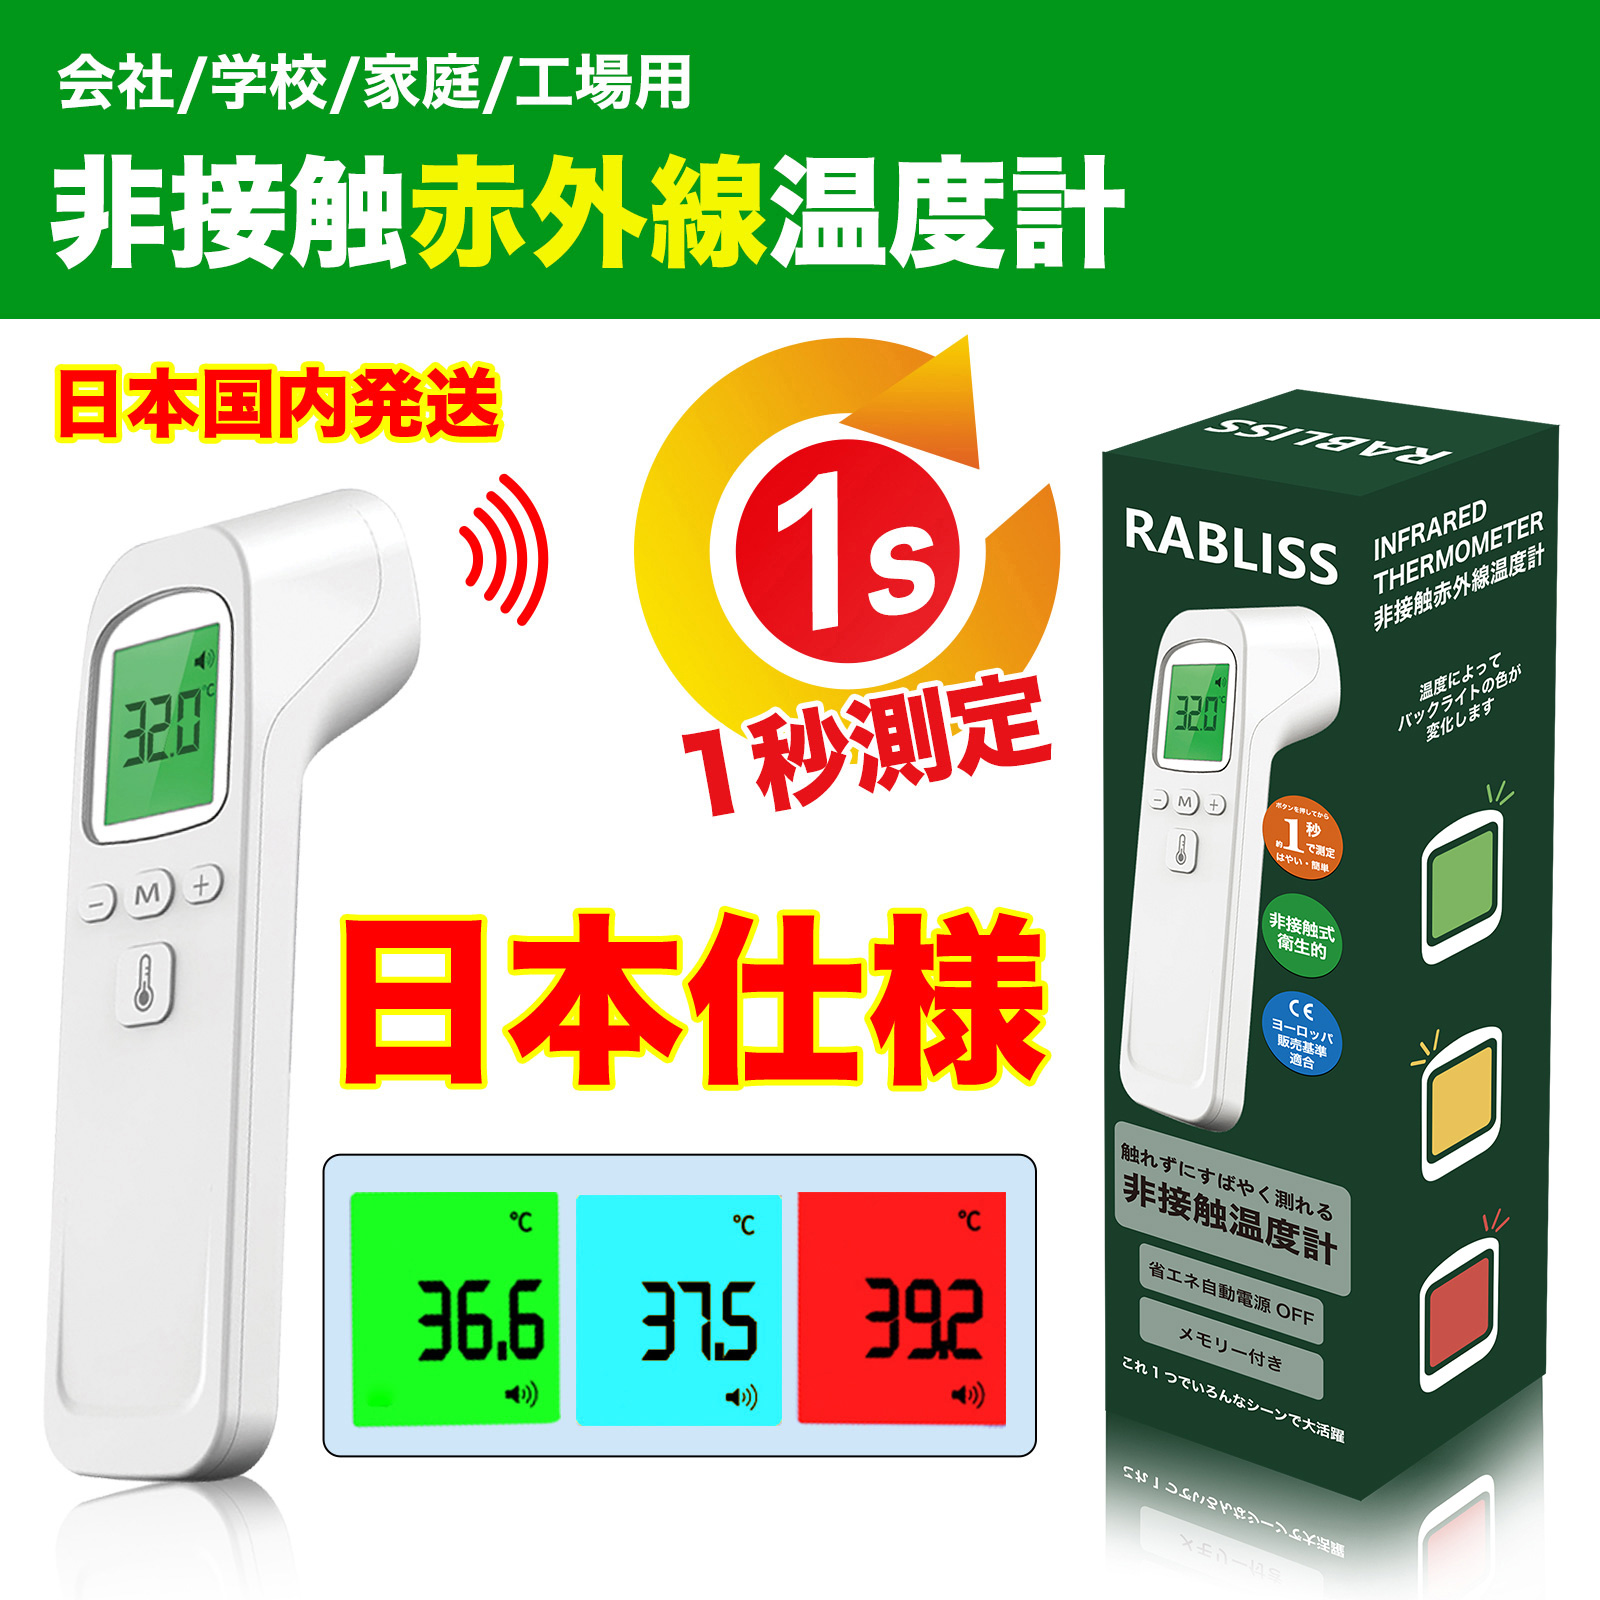 ★即納★ 最新モデル RABLISS KO-133 WHITE 赤外線温度計 非接触式温度計 デジタル 高精度